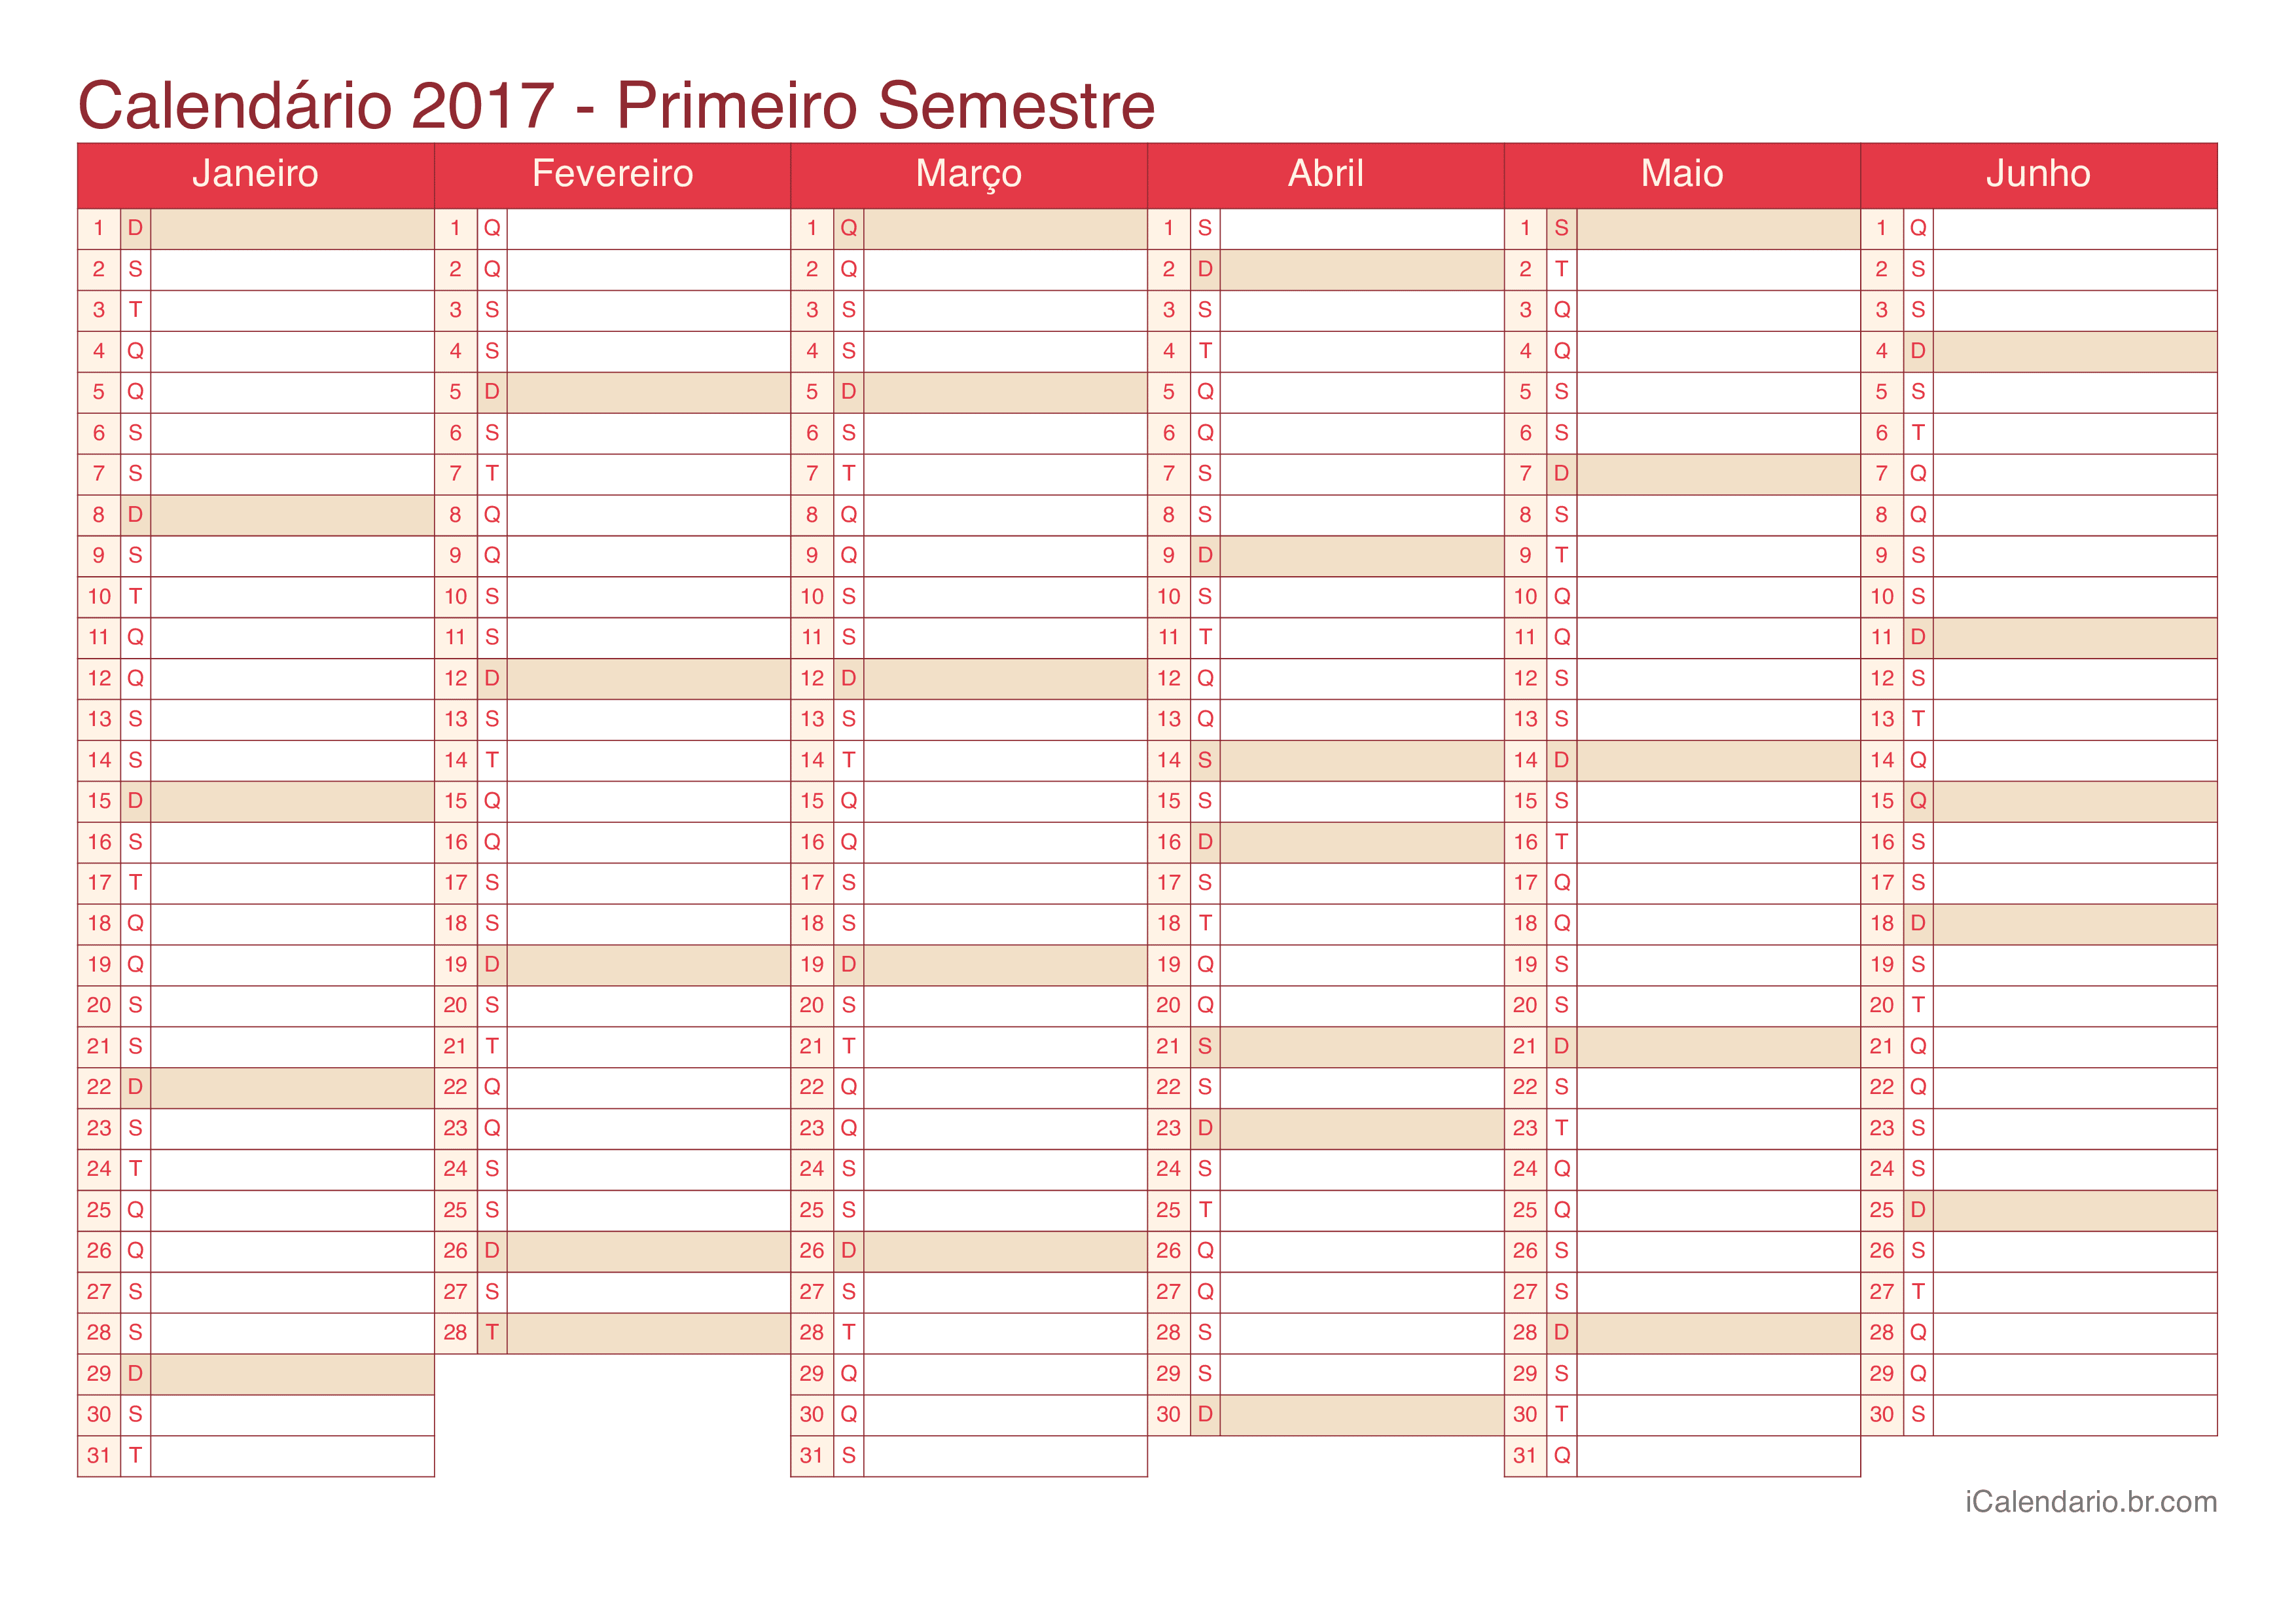 Calendário por semestre 2017 - Cherry